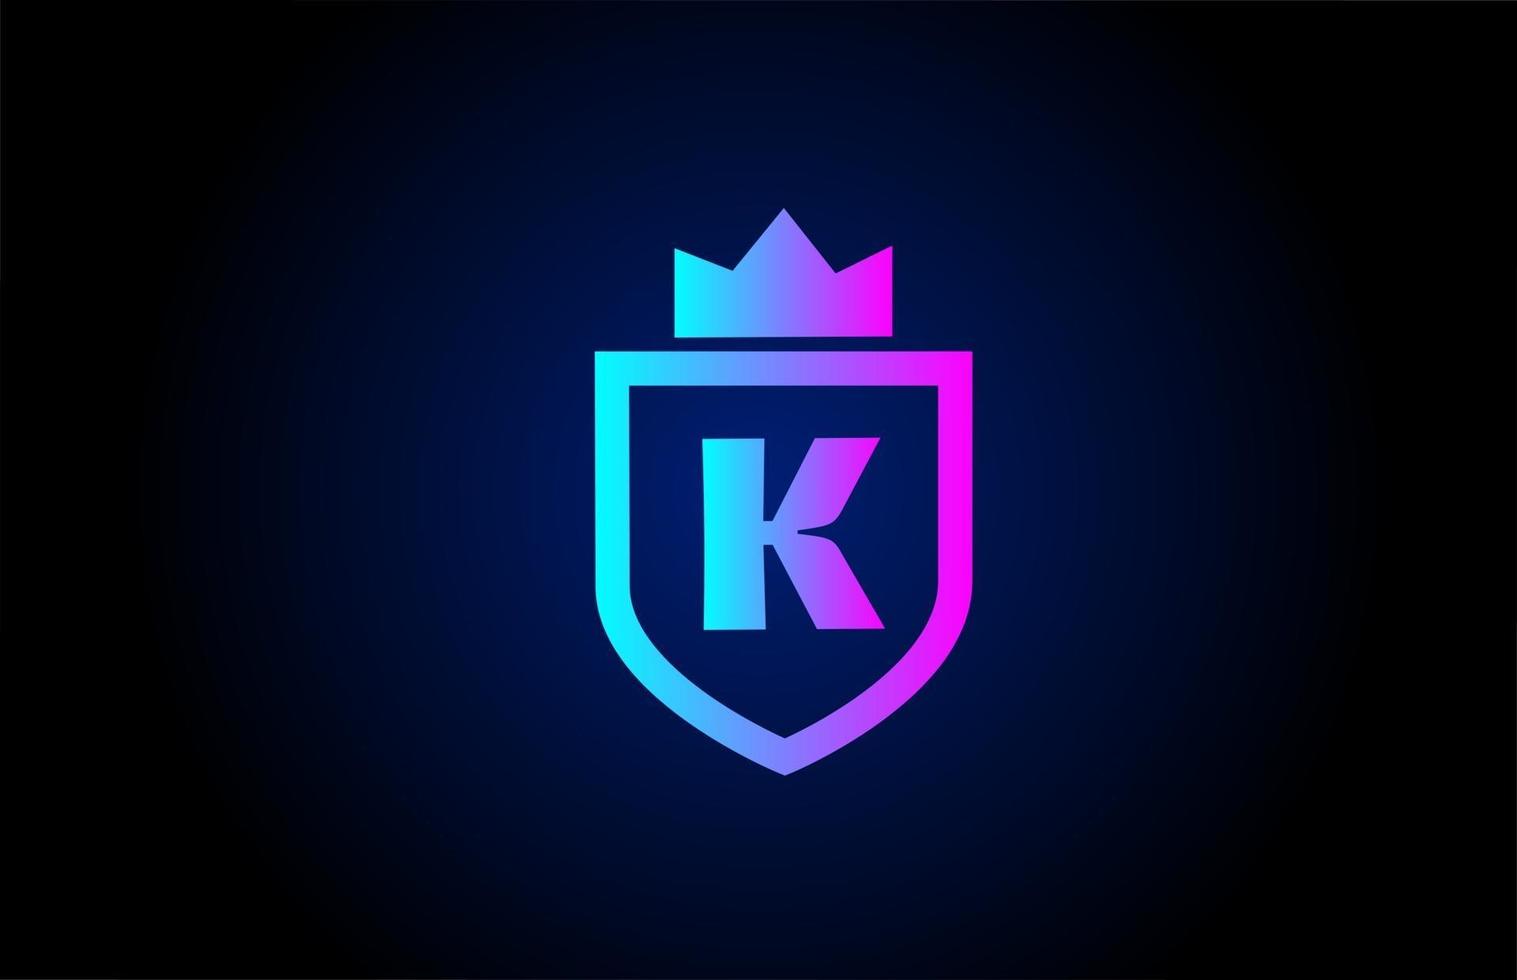 logo dell'icona della lettera dell'alfabeto reale k per il business. design aziendale con corona del re e scudo in colore sfumato per l'identità aziendale vettore